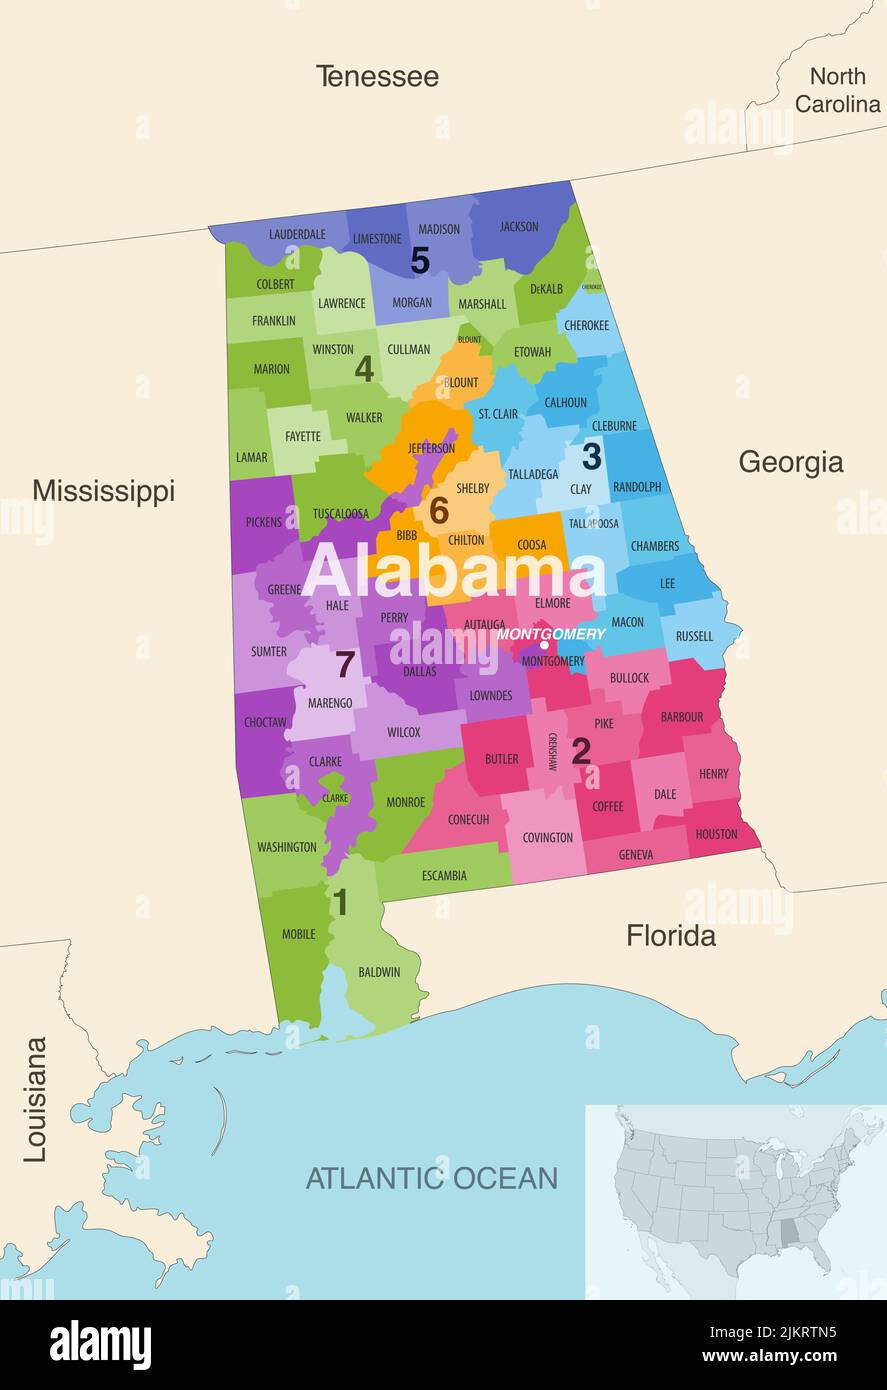 Le contee dello stato dell'Alabama sono colorate da una mappa vettoriale dei distretti del Congresso con gli stati vicini e le terrotorie Illustrazione Vettoriale